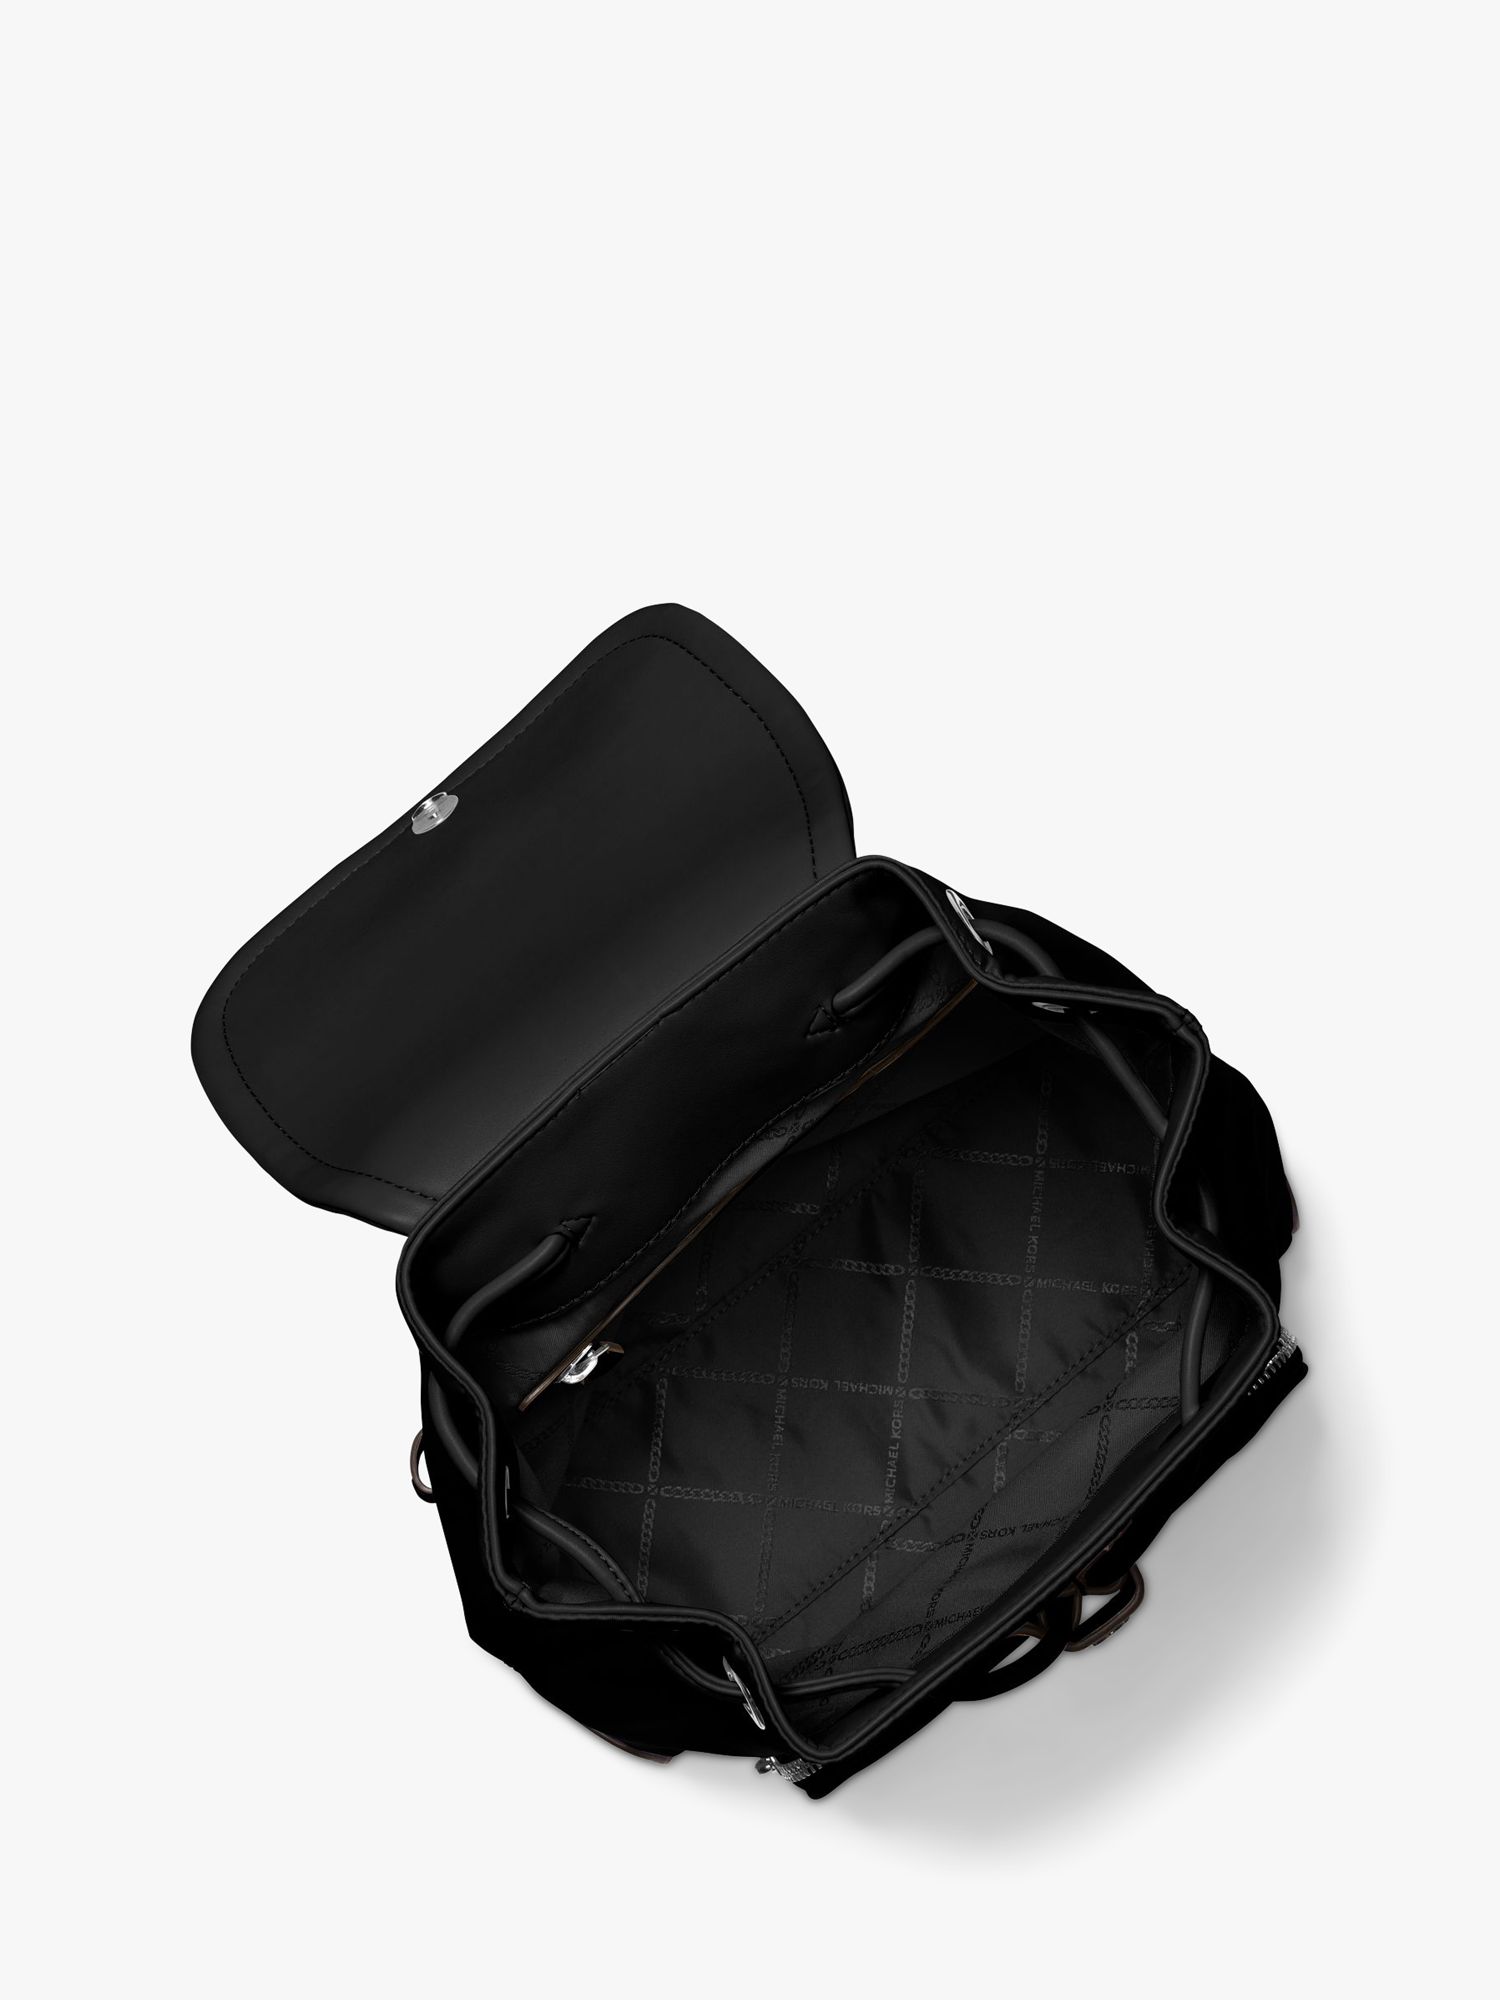 Buy Michael Kors Carasm Backpack, Black Online at johnlewis.com